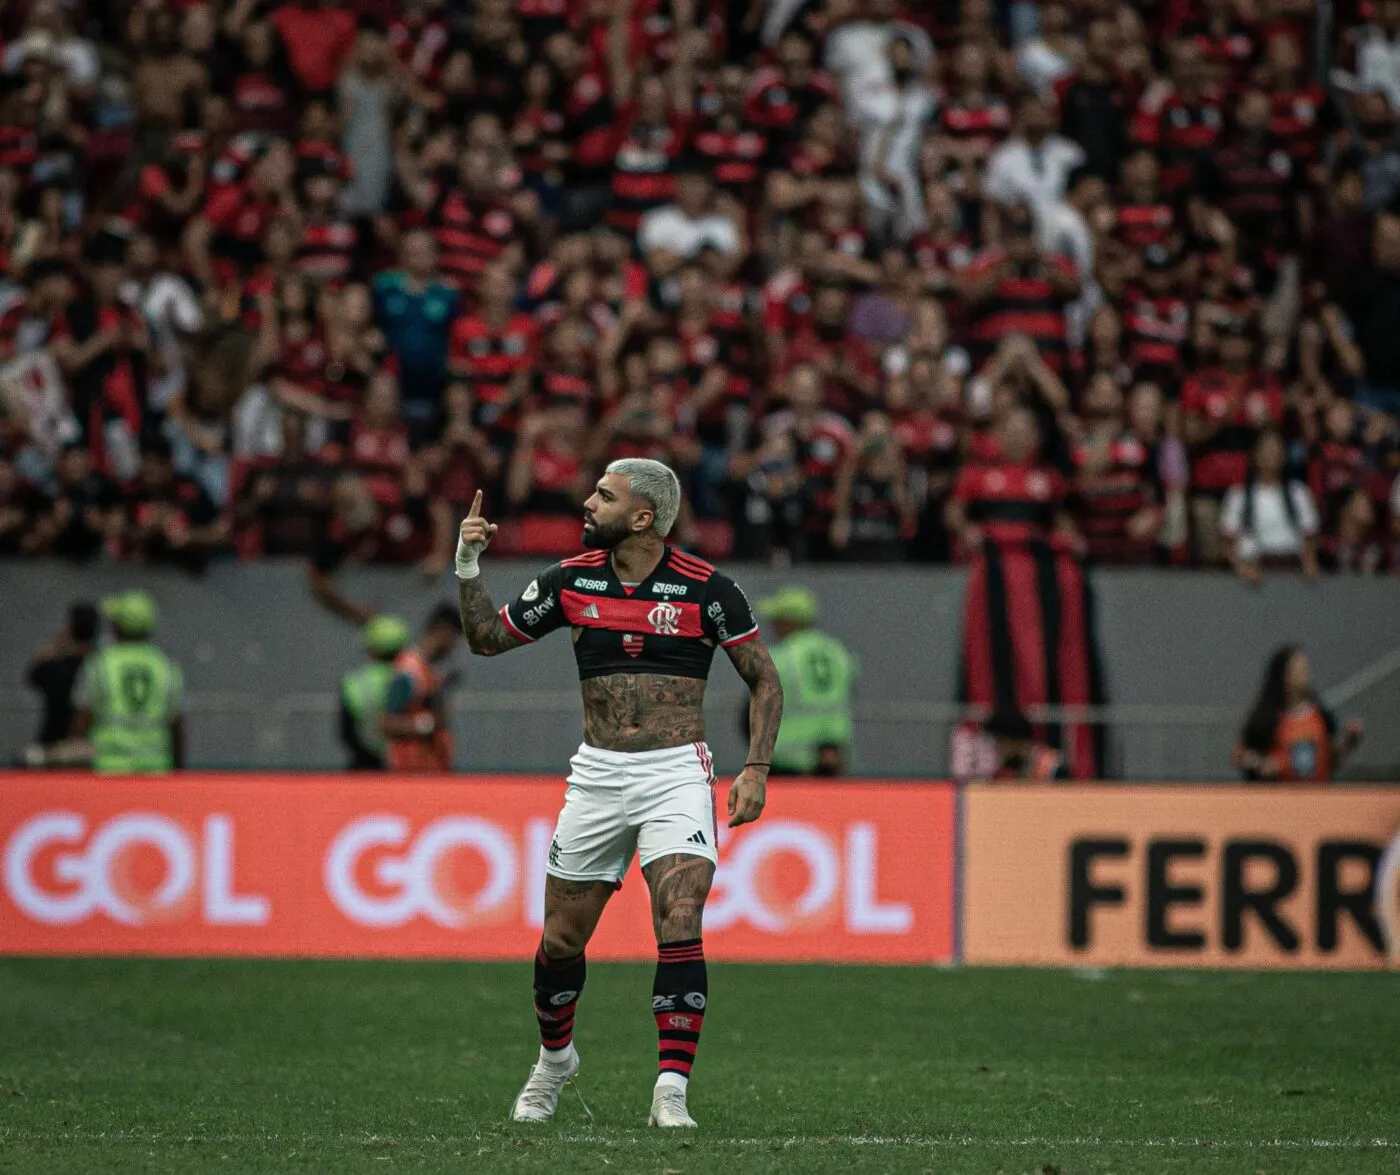 Le penalty fou accordé à Flamengo